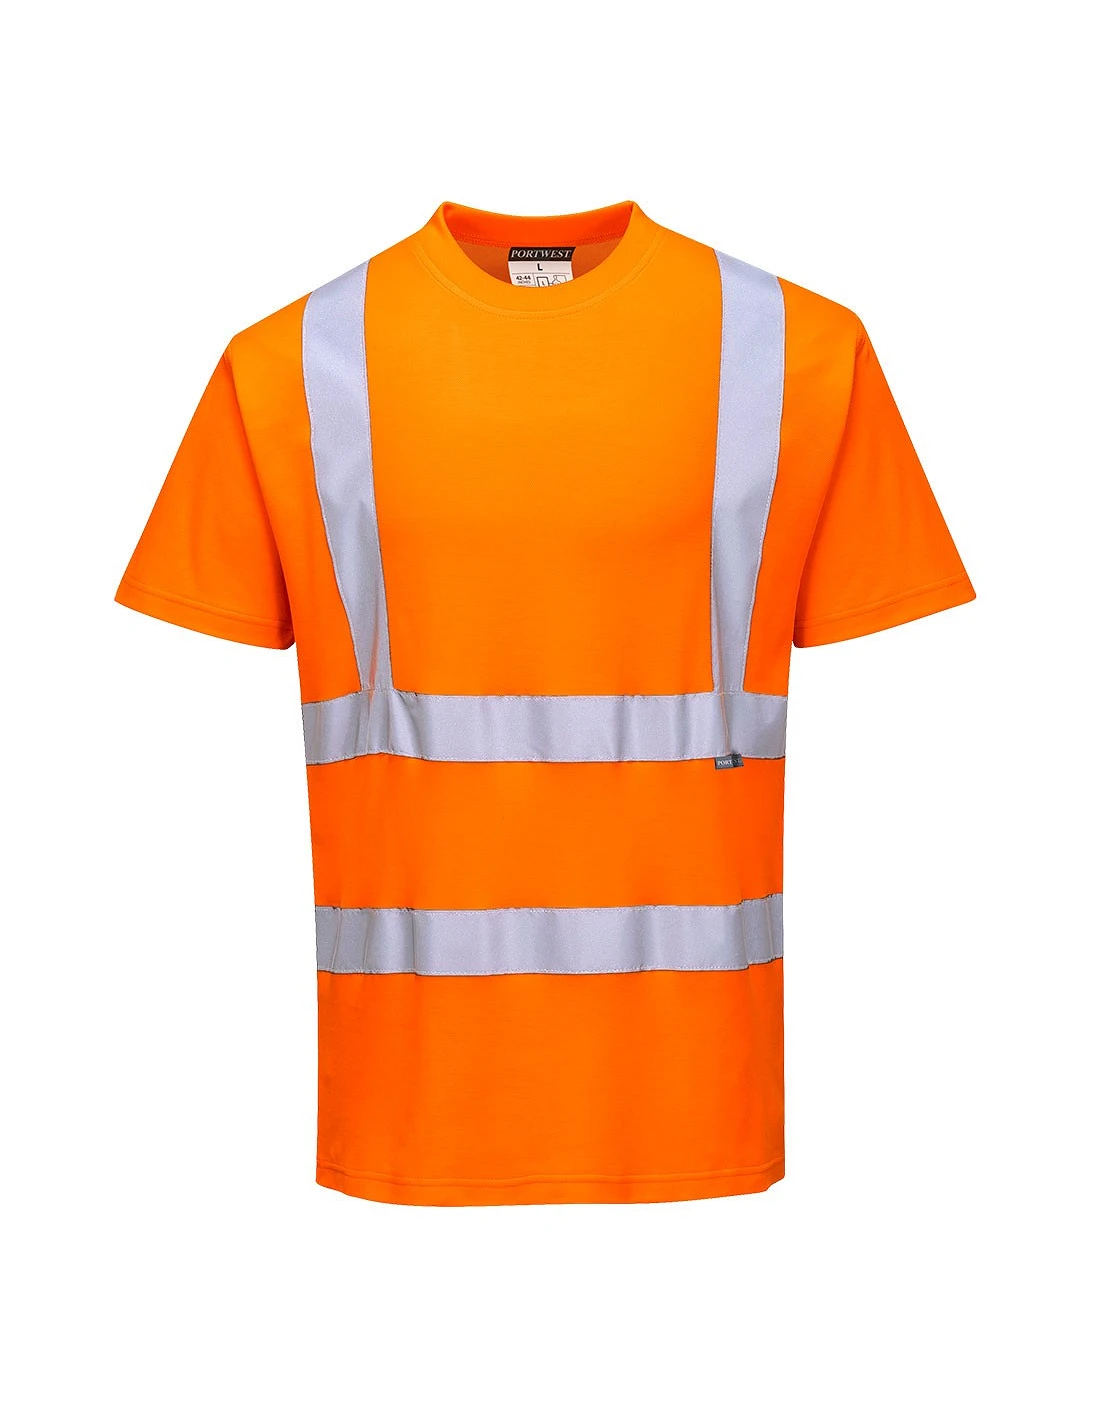 Vestuario laboral, ropa de seguridad y EPIs